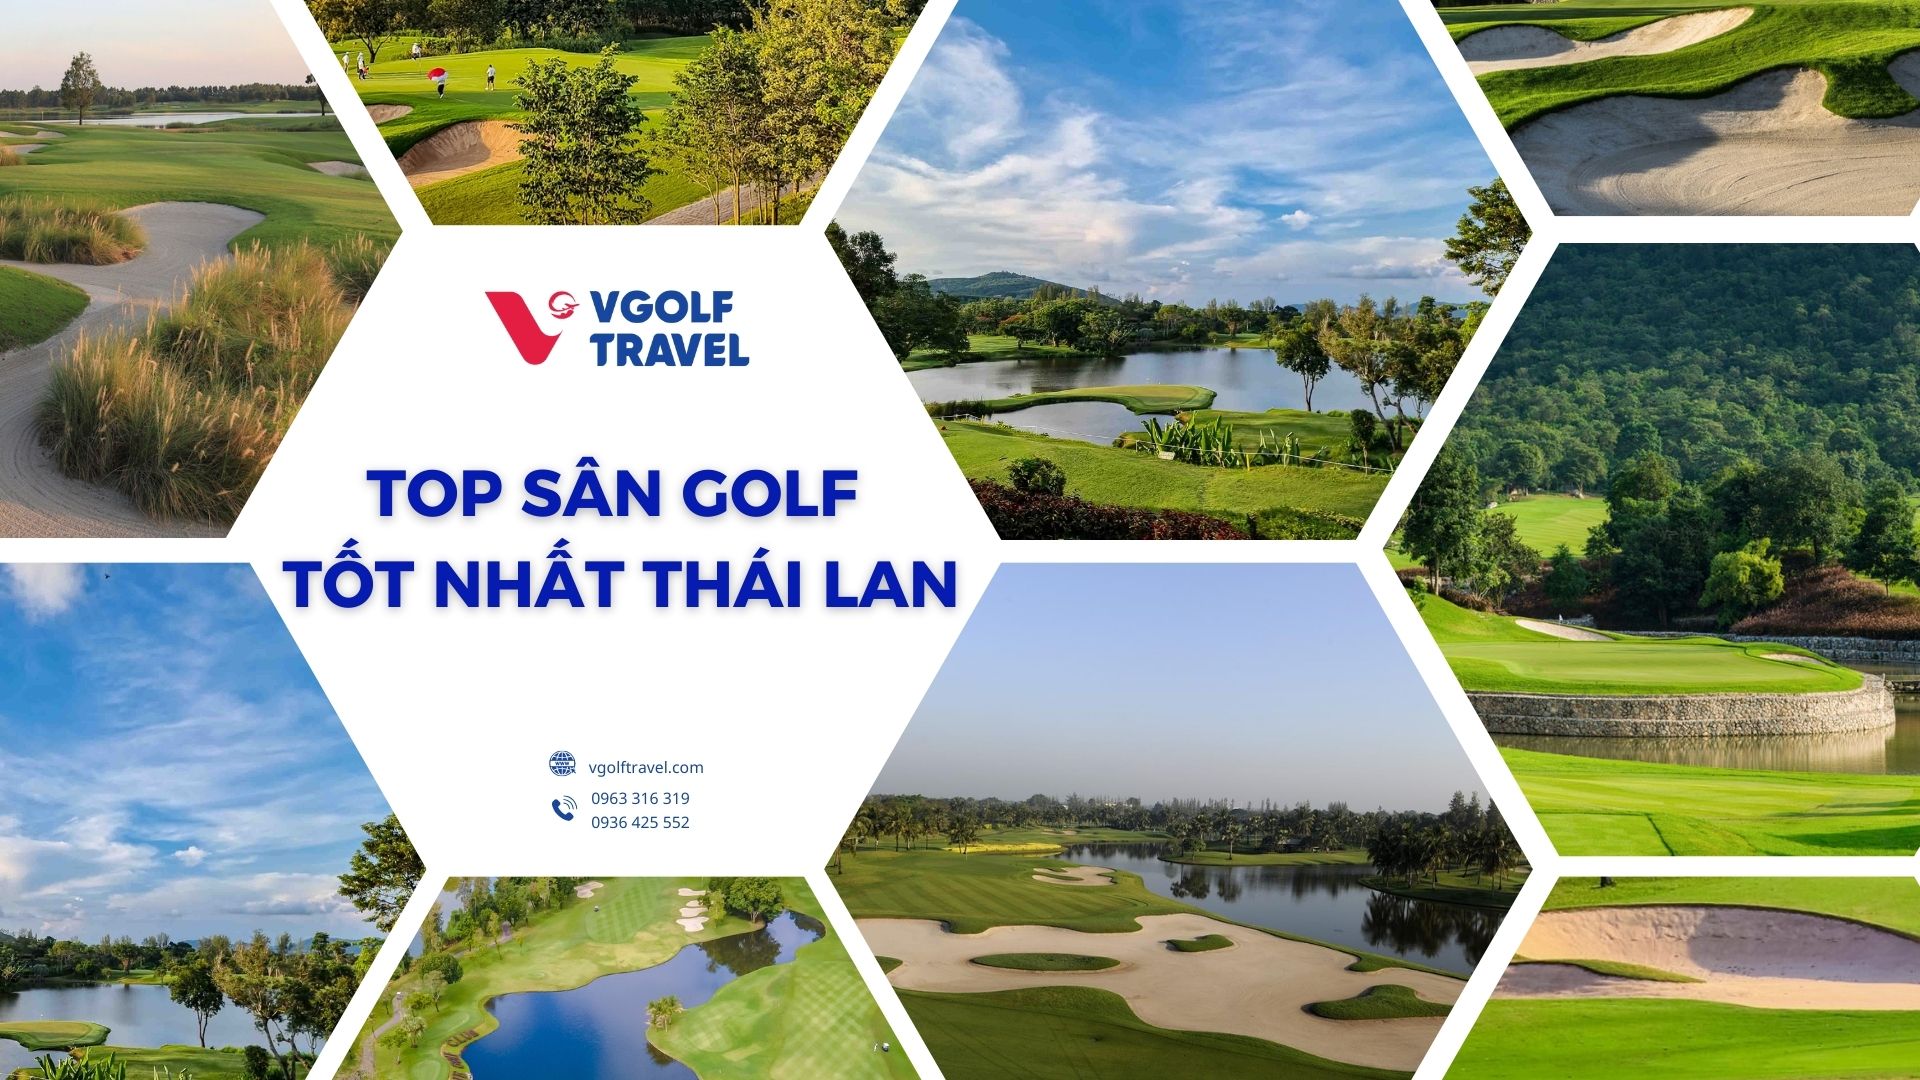 Khám phá golf xứ Chùa Vàng: Top sân golf tốt nhất Thái Lan